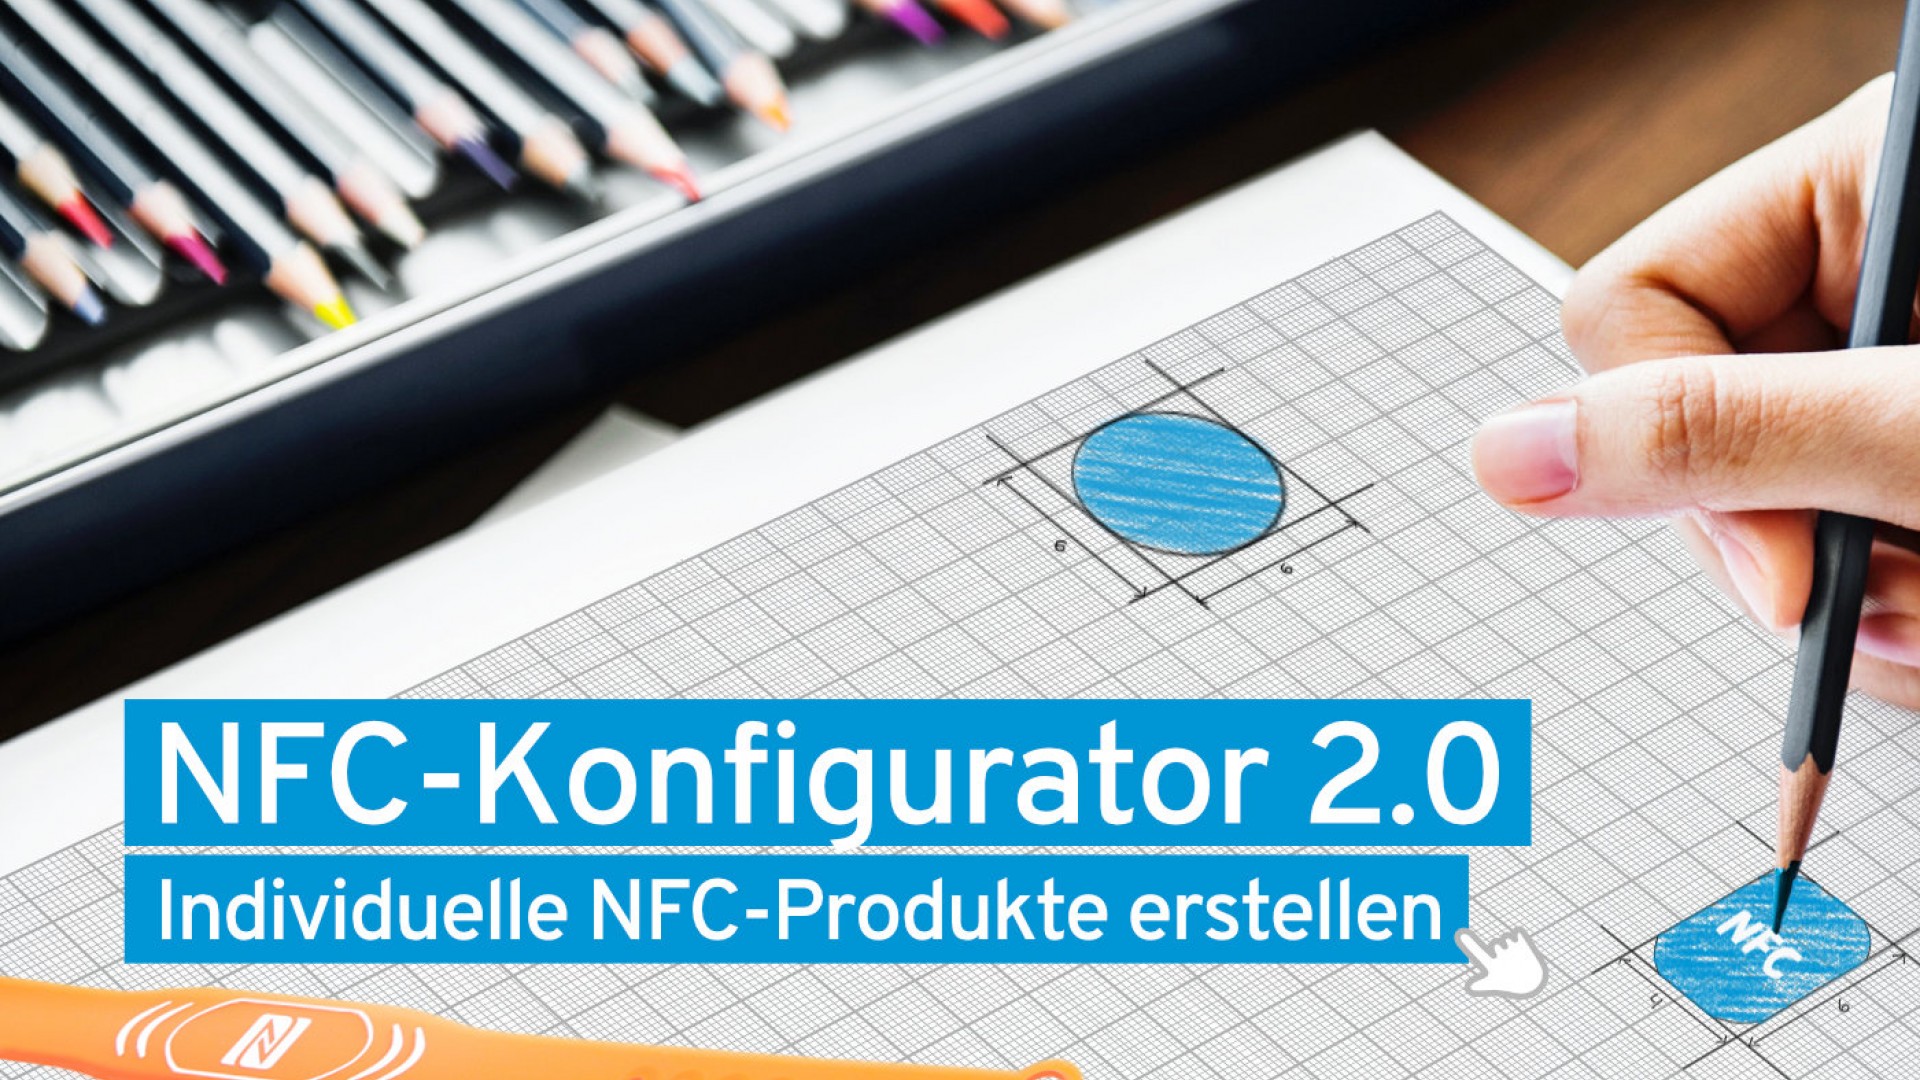 NFC-Produkte individuell gestalten und bedrucken – unser NFC-Konfigurator 2.0